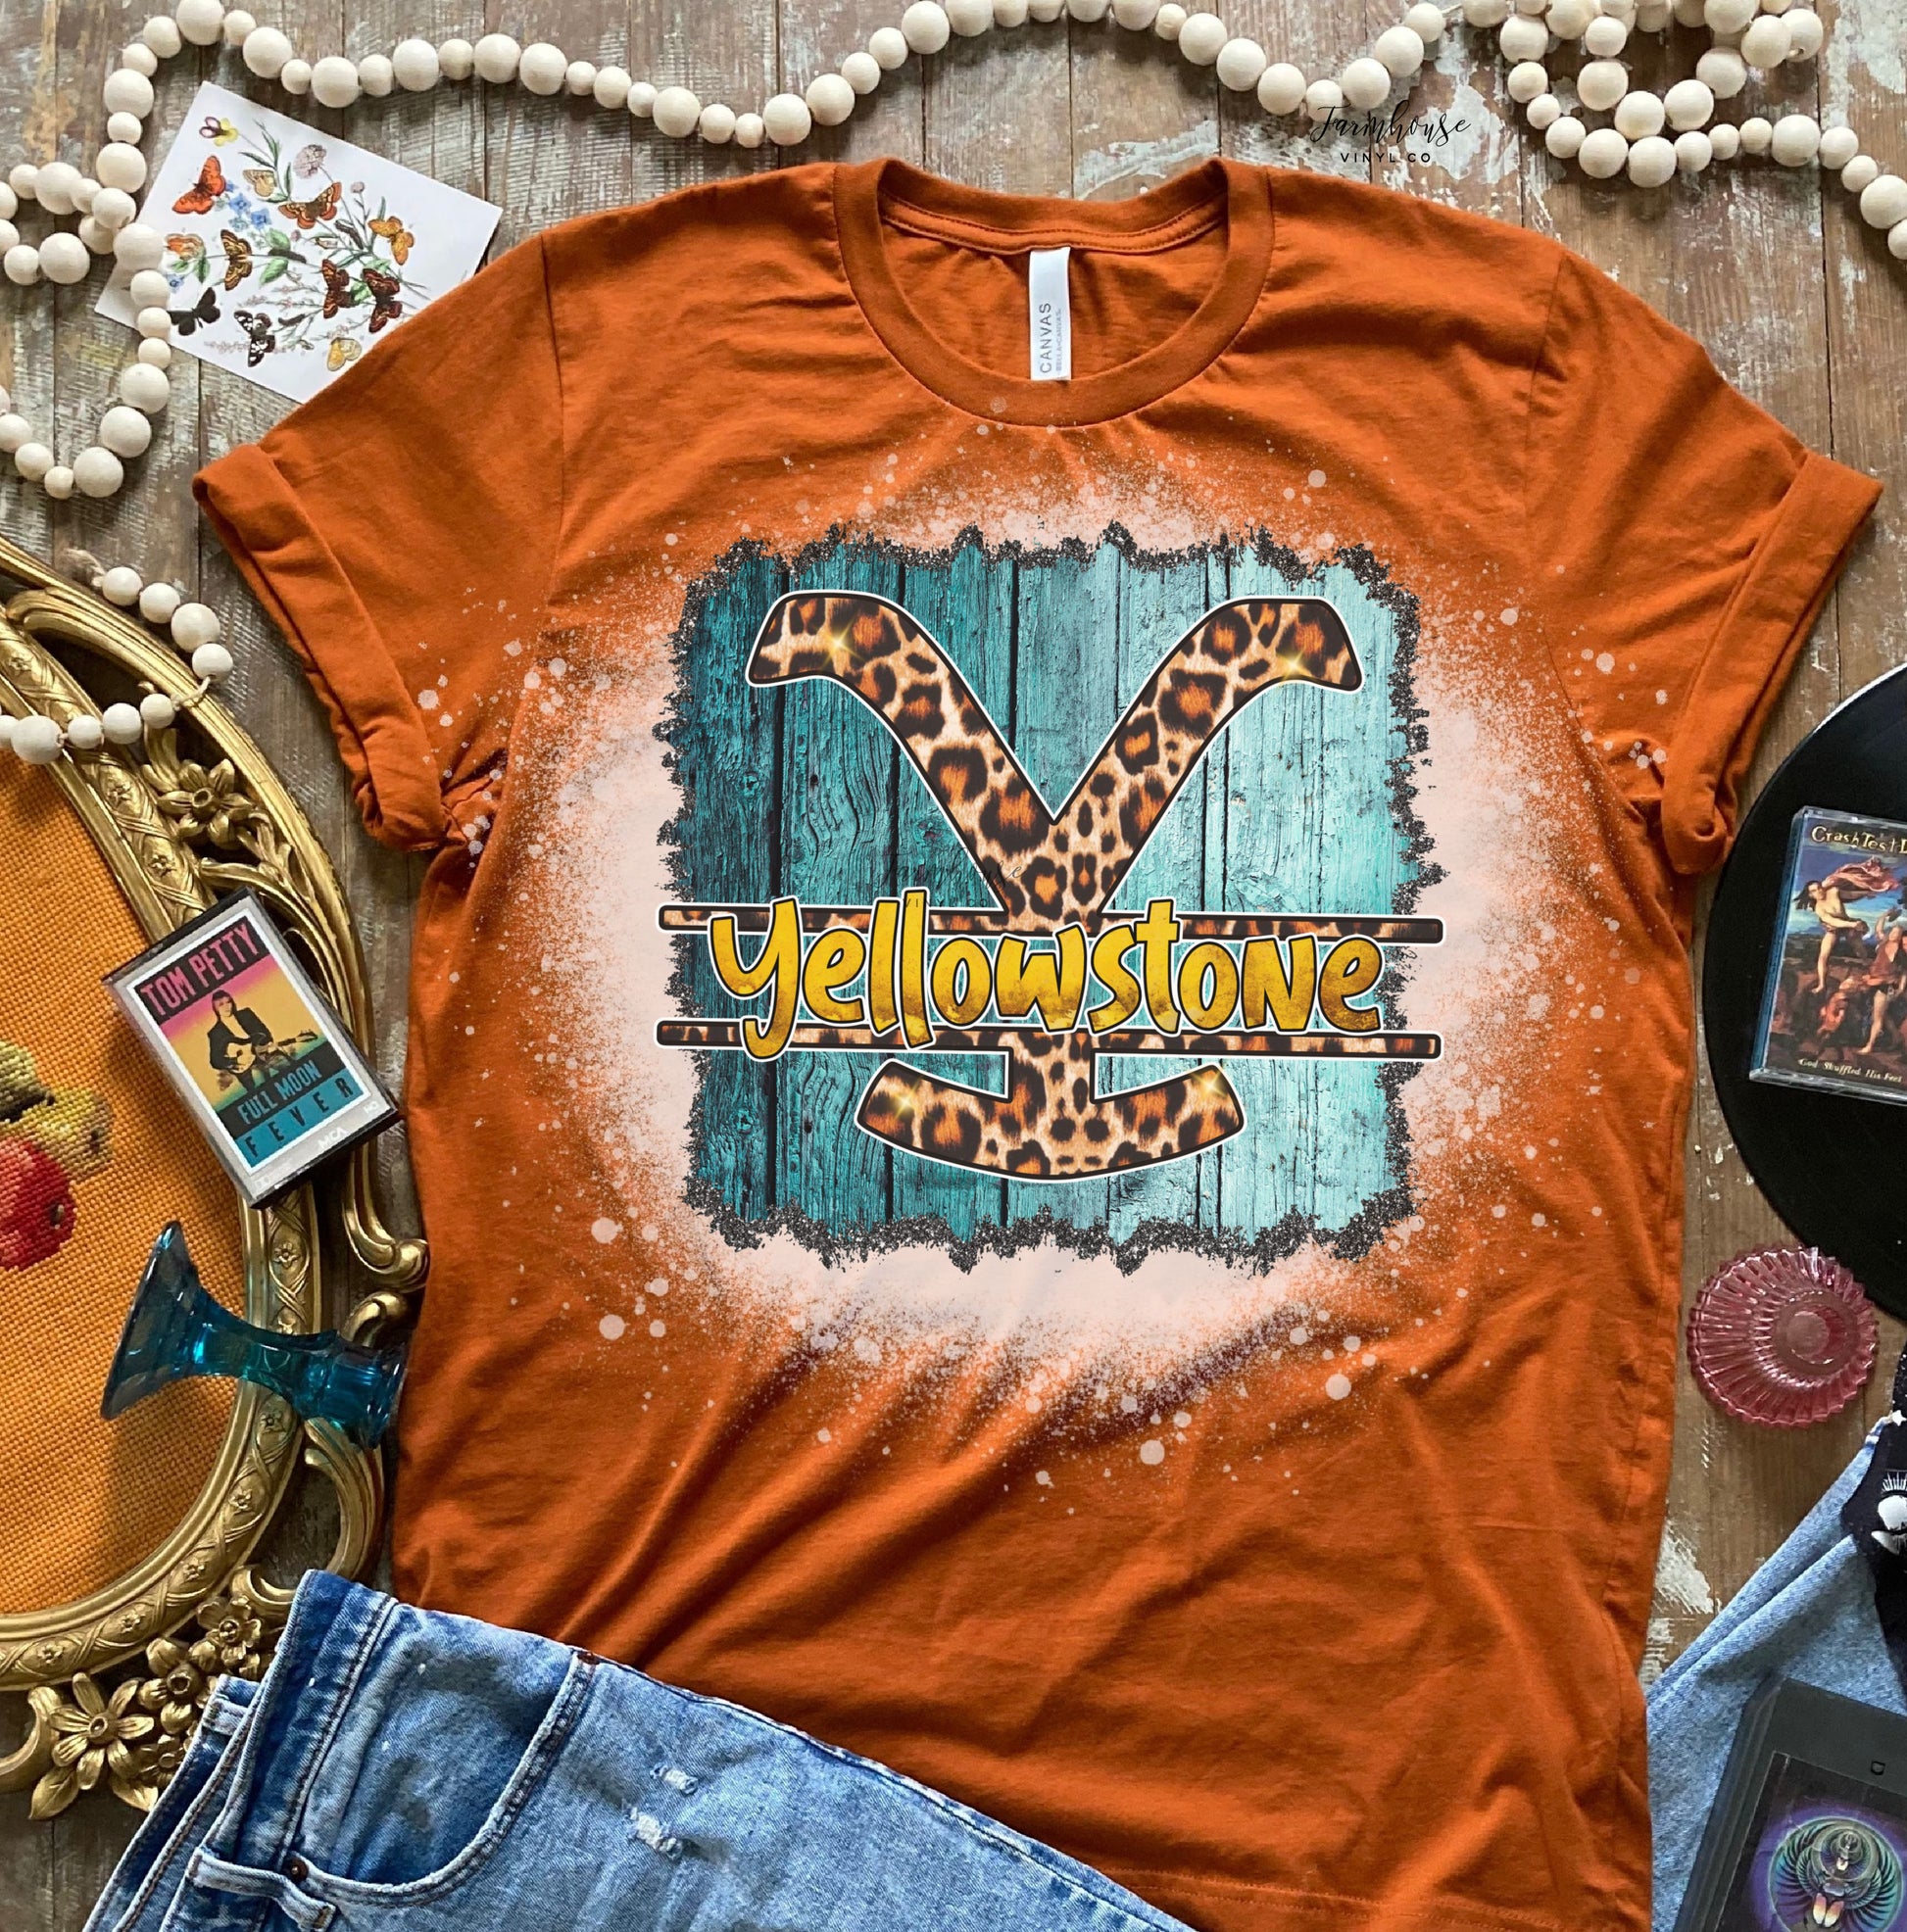 Yellowstone Show Shirt Collection - Farmhouse Vinyl Co